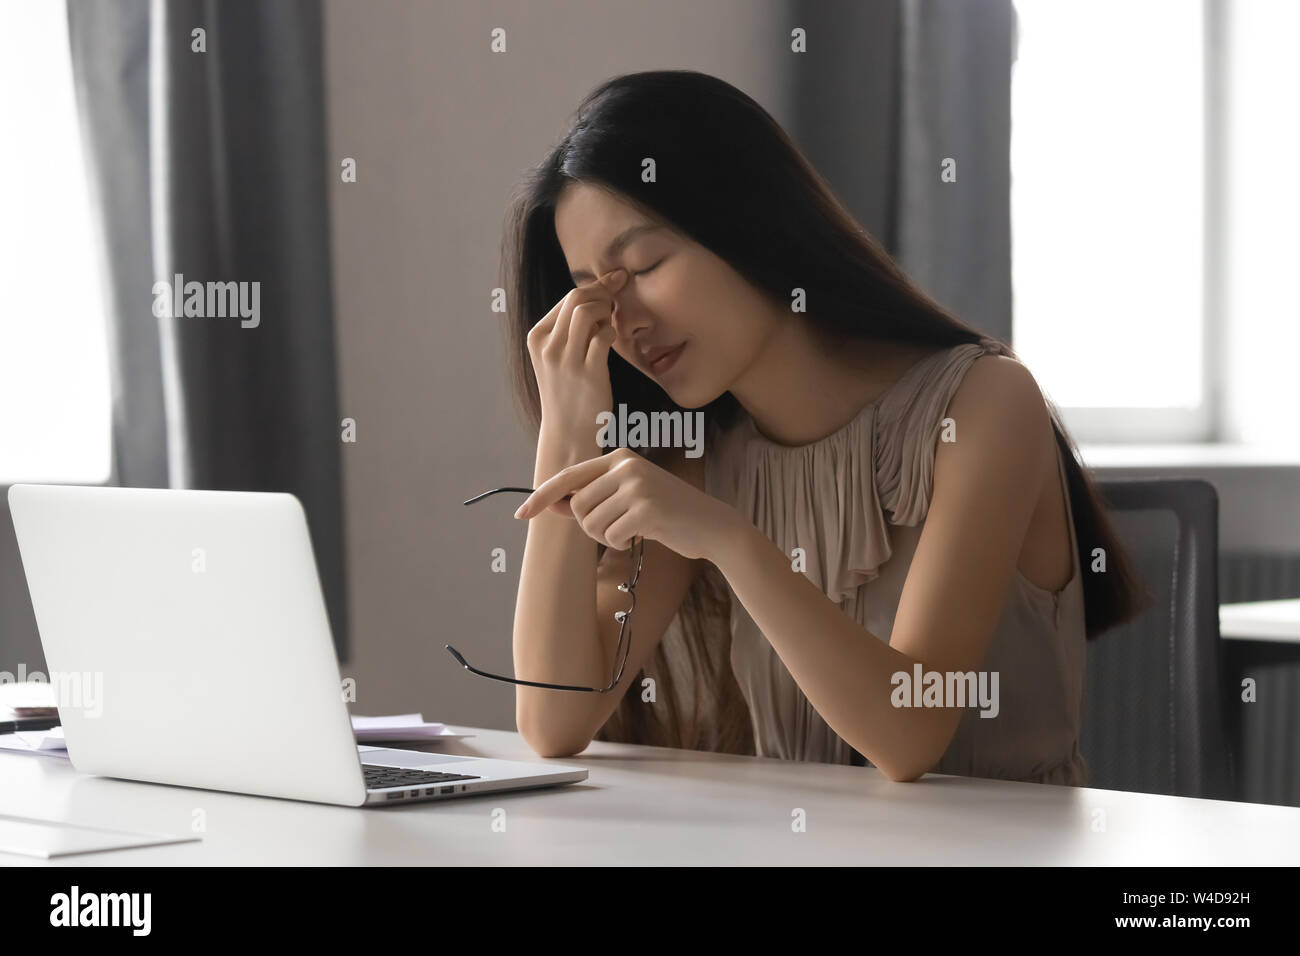 Oberati di lavoro ha sottolineato asian business woman holding bicchieri sensazione di affaticamento della vista Foto Stock